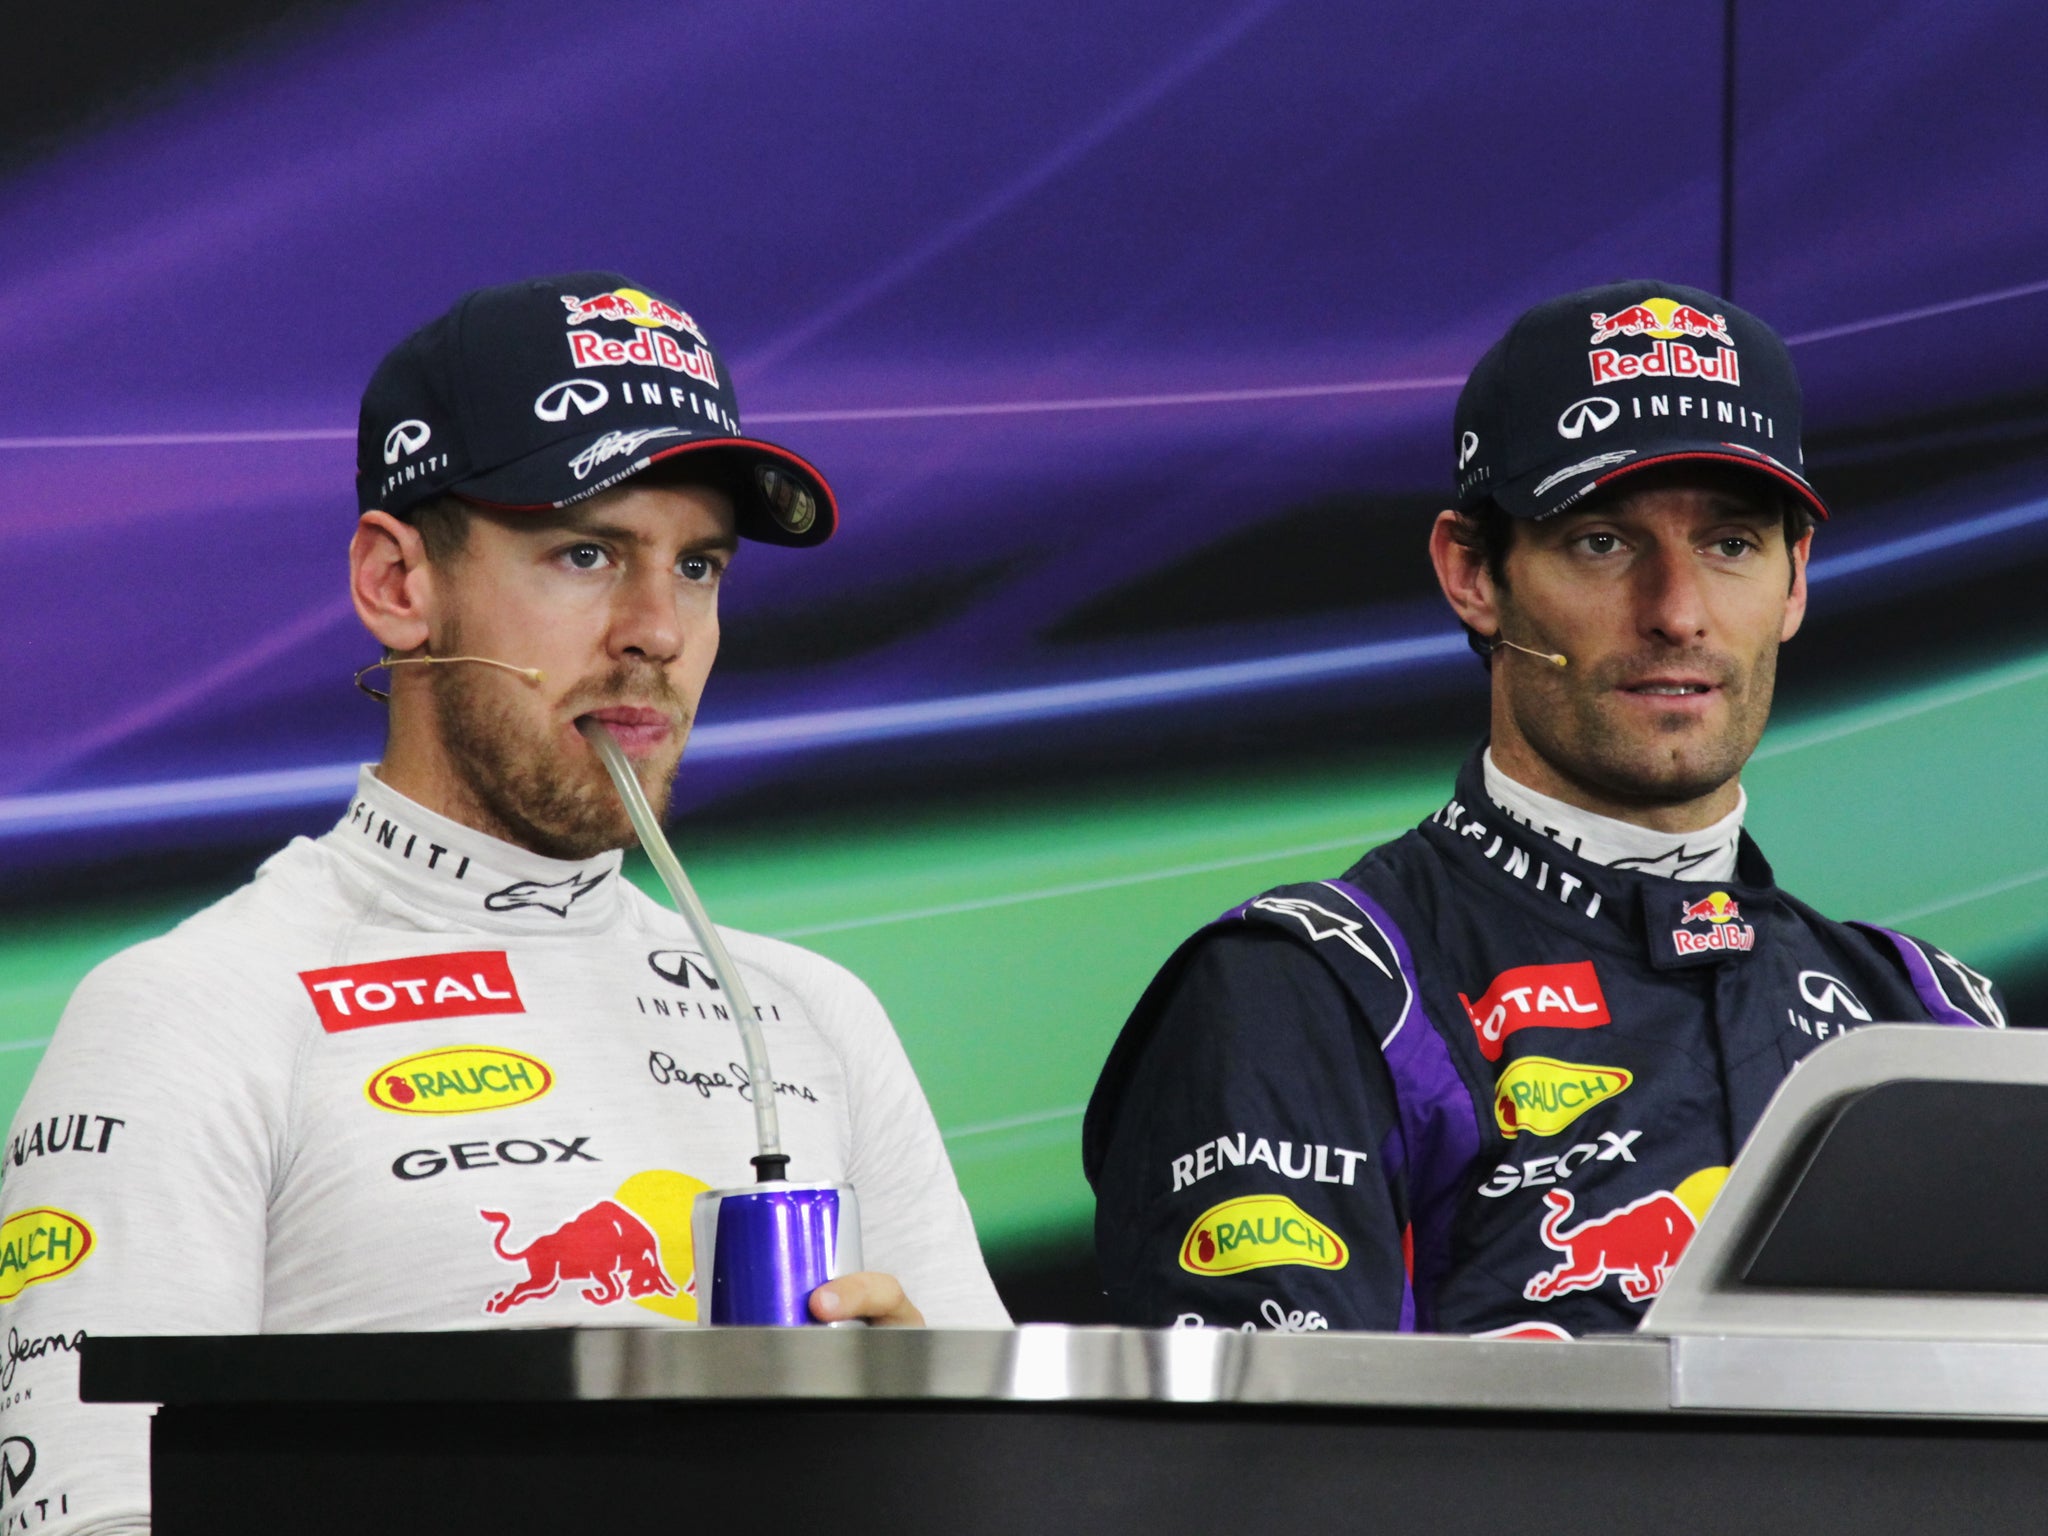 Sebastian Vettel will start the Japanese Grand Prix in second behind his Red Bull team-mate Mark Webber